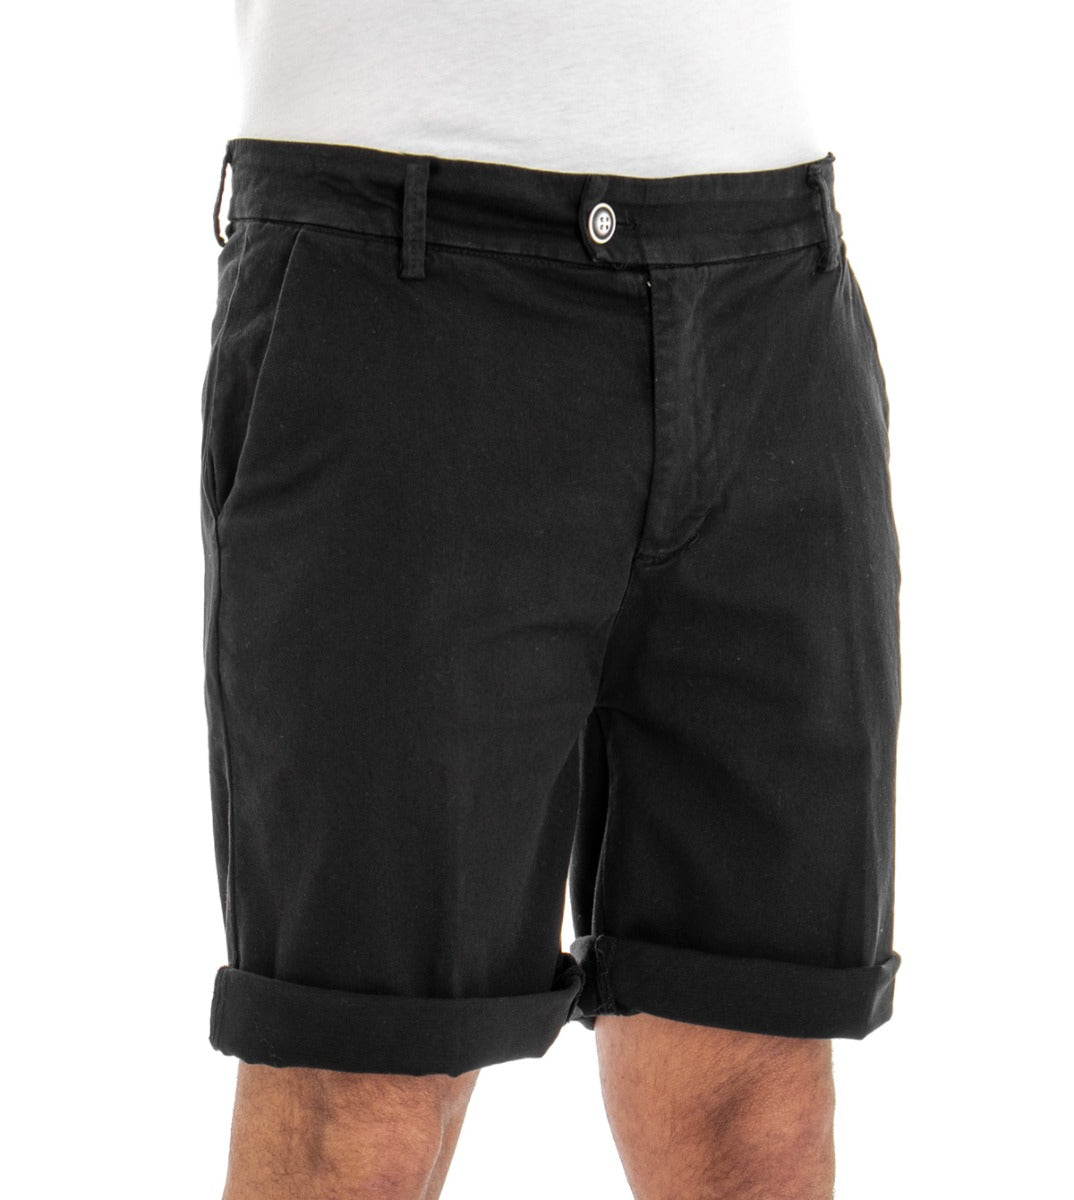 Bermuda Pantaloncino Uomo Corto Cotone Tasca America Nero GIOSAL-PC1378A